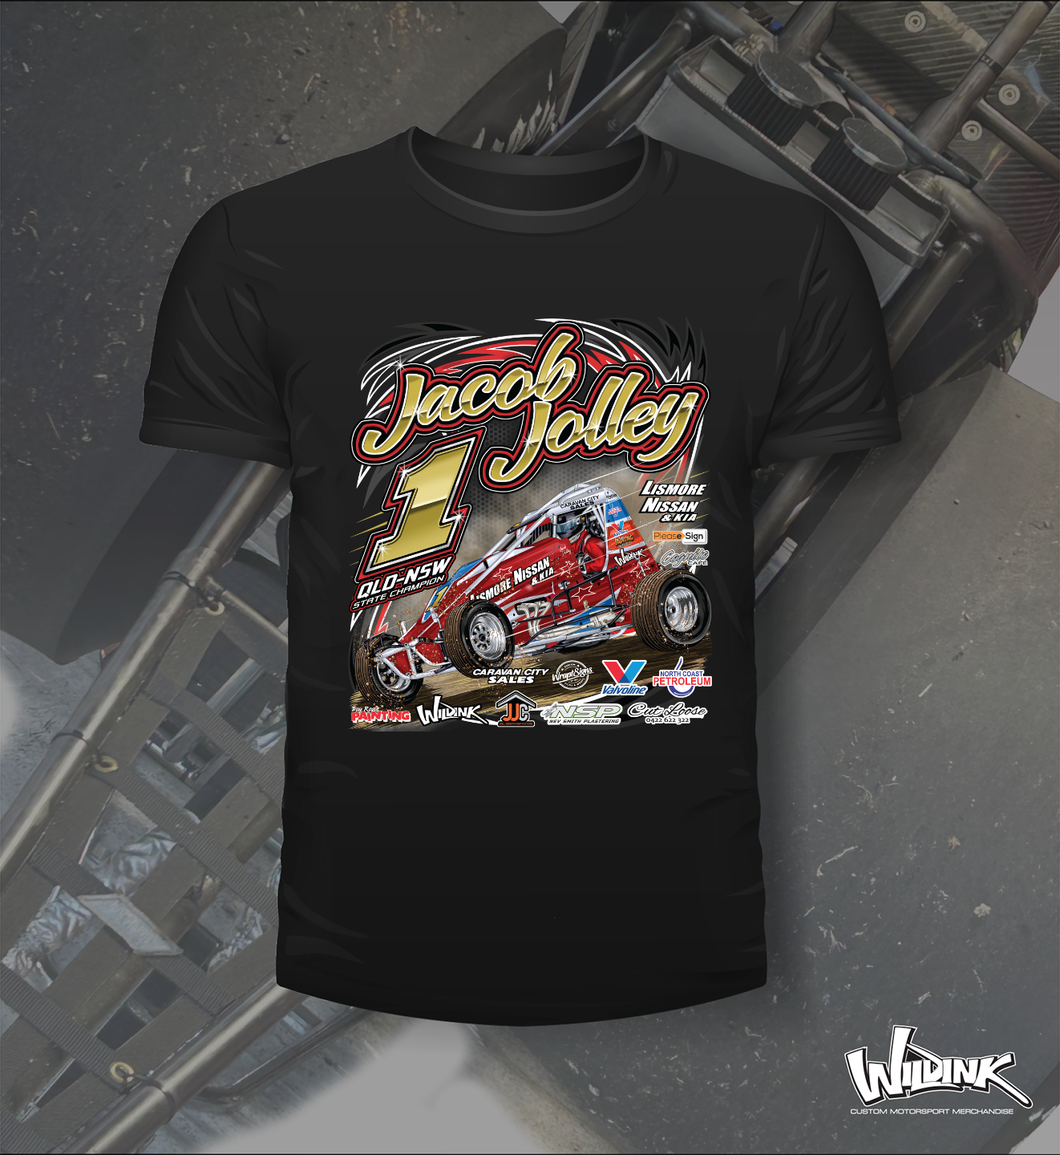 Jacob Jolley Racing - Tee Shirt